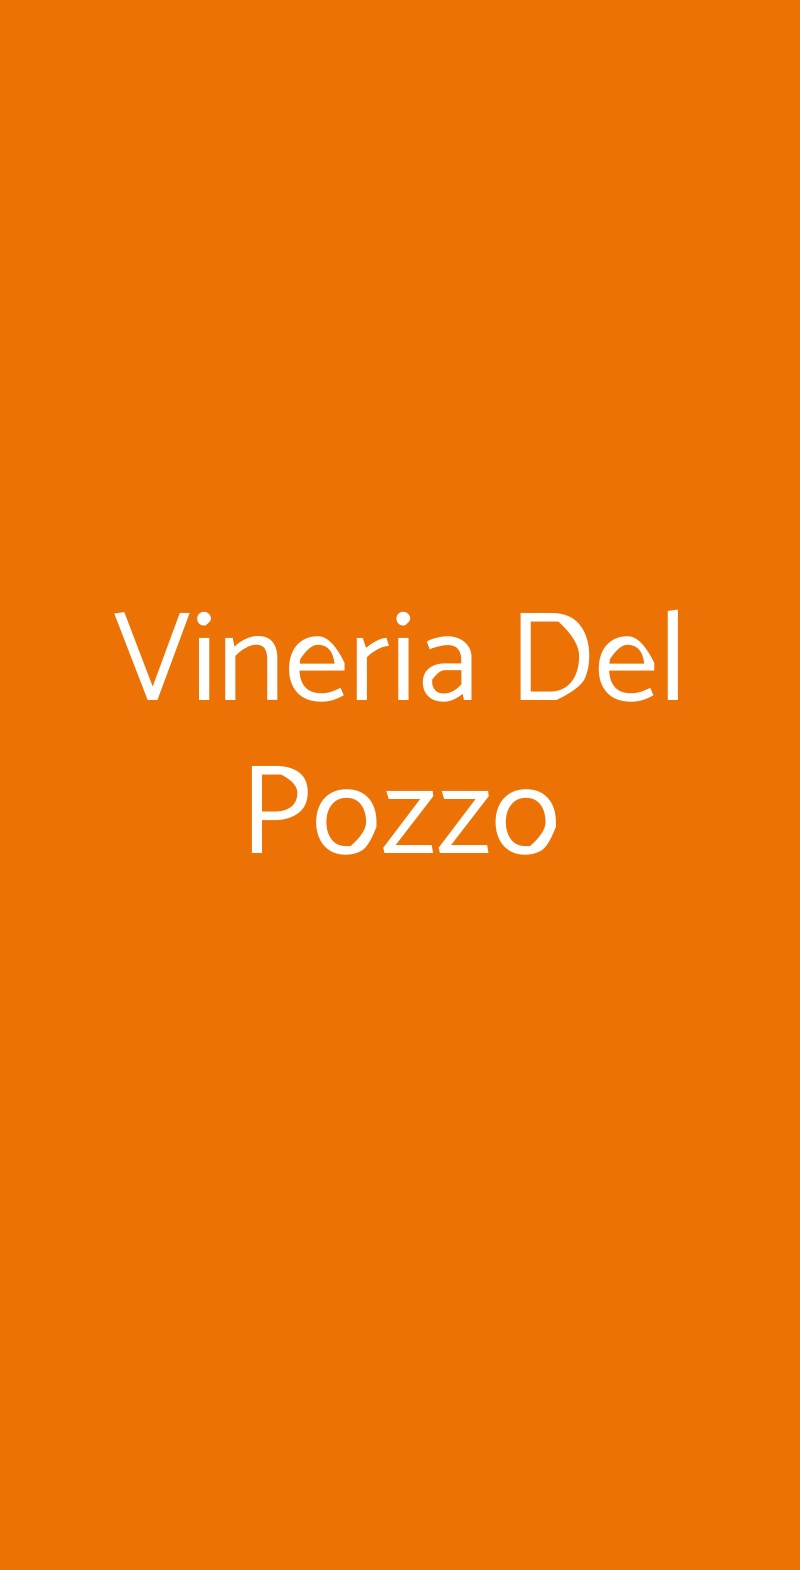 Vineria Del Pozzo Conzano menù 1 pagina